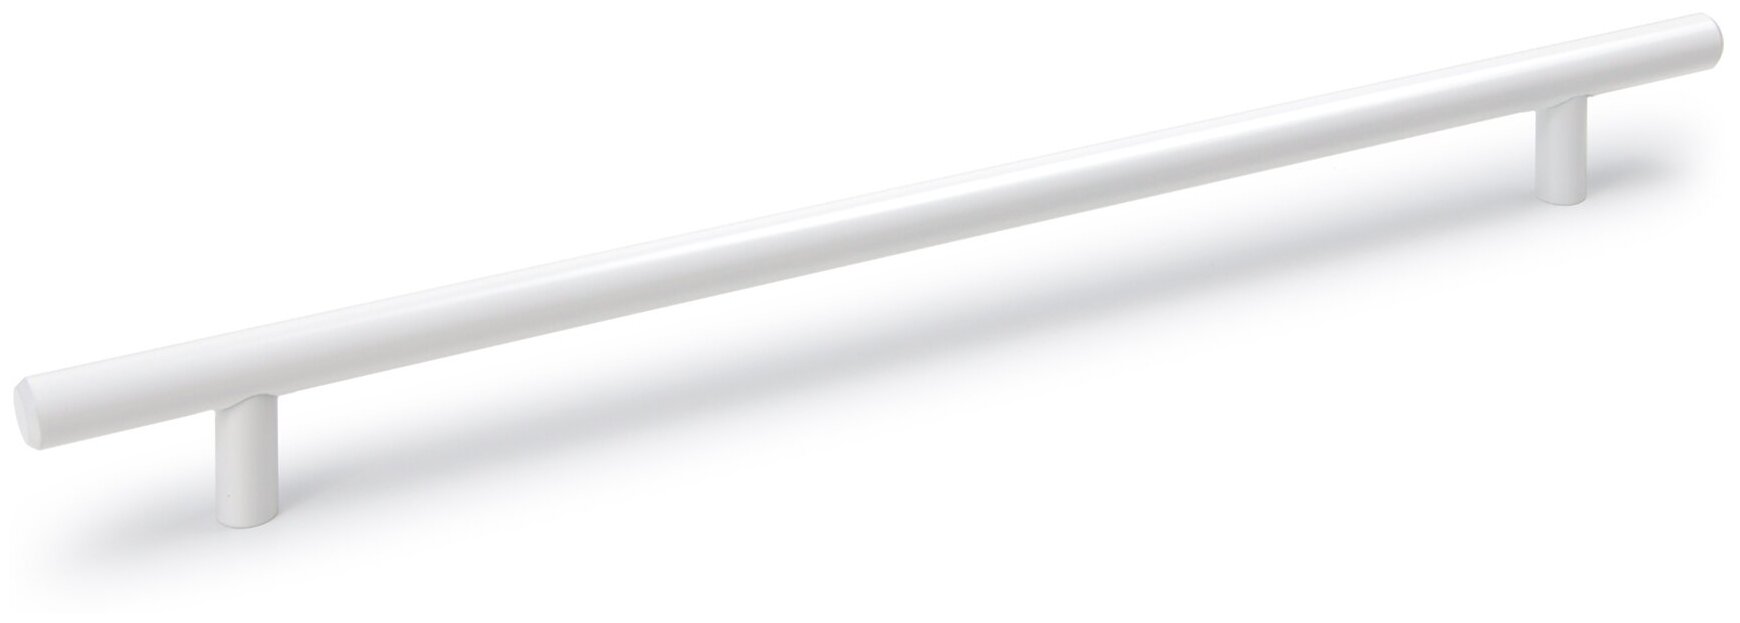 Мебельная ручка - рейлинг длина 96 мм диаметр 12 мм цвет - белый